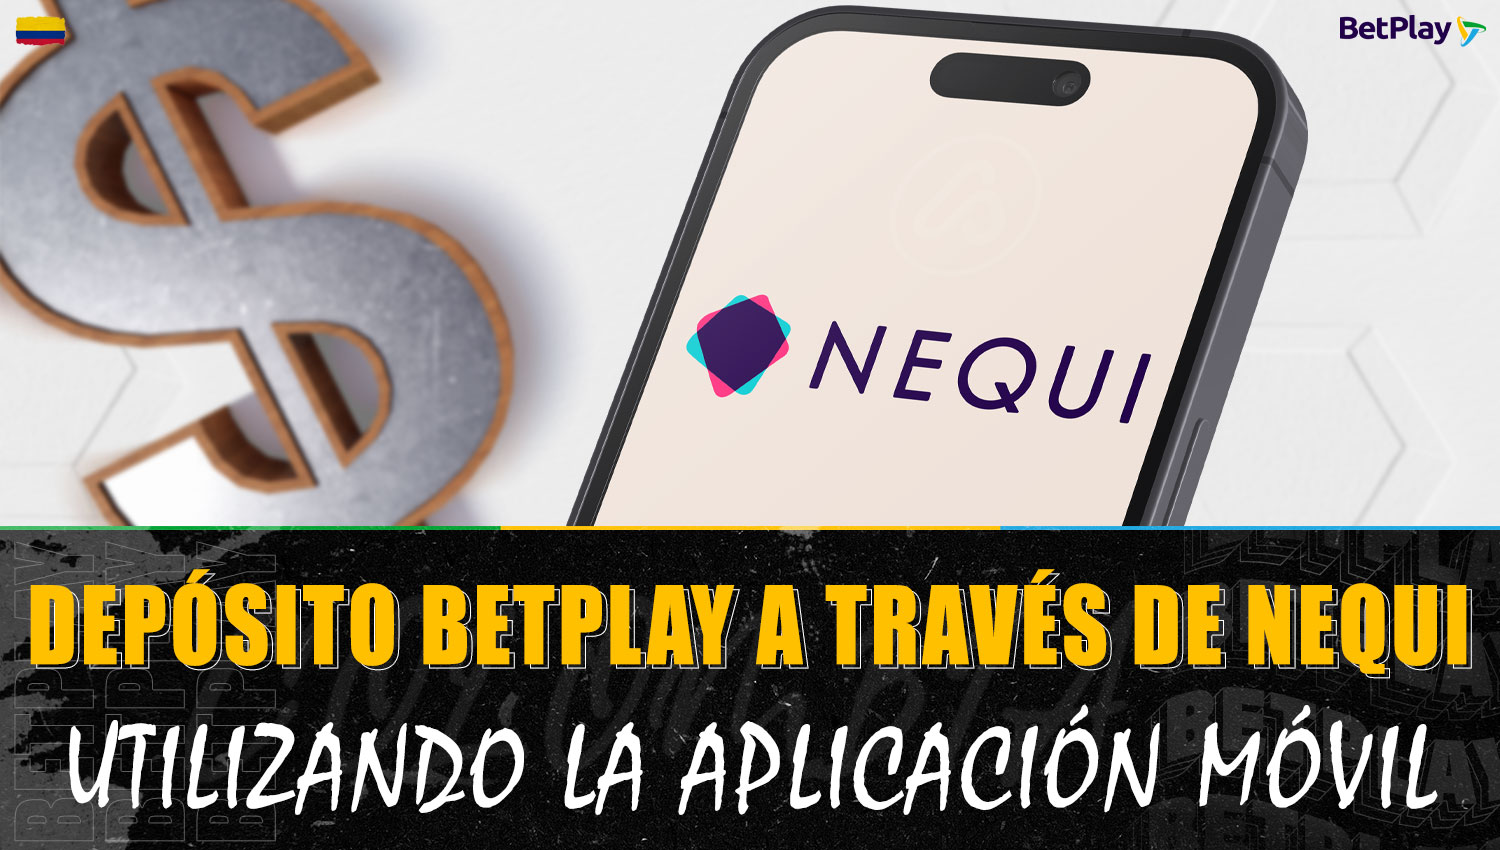 En la aplicación móvil de Betplay, tienes la opción de recargar tu cuenta con Nequi